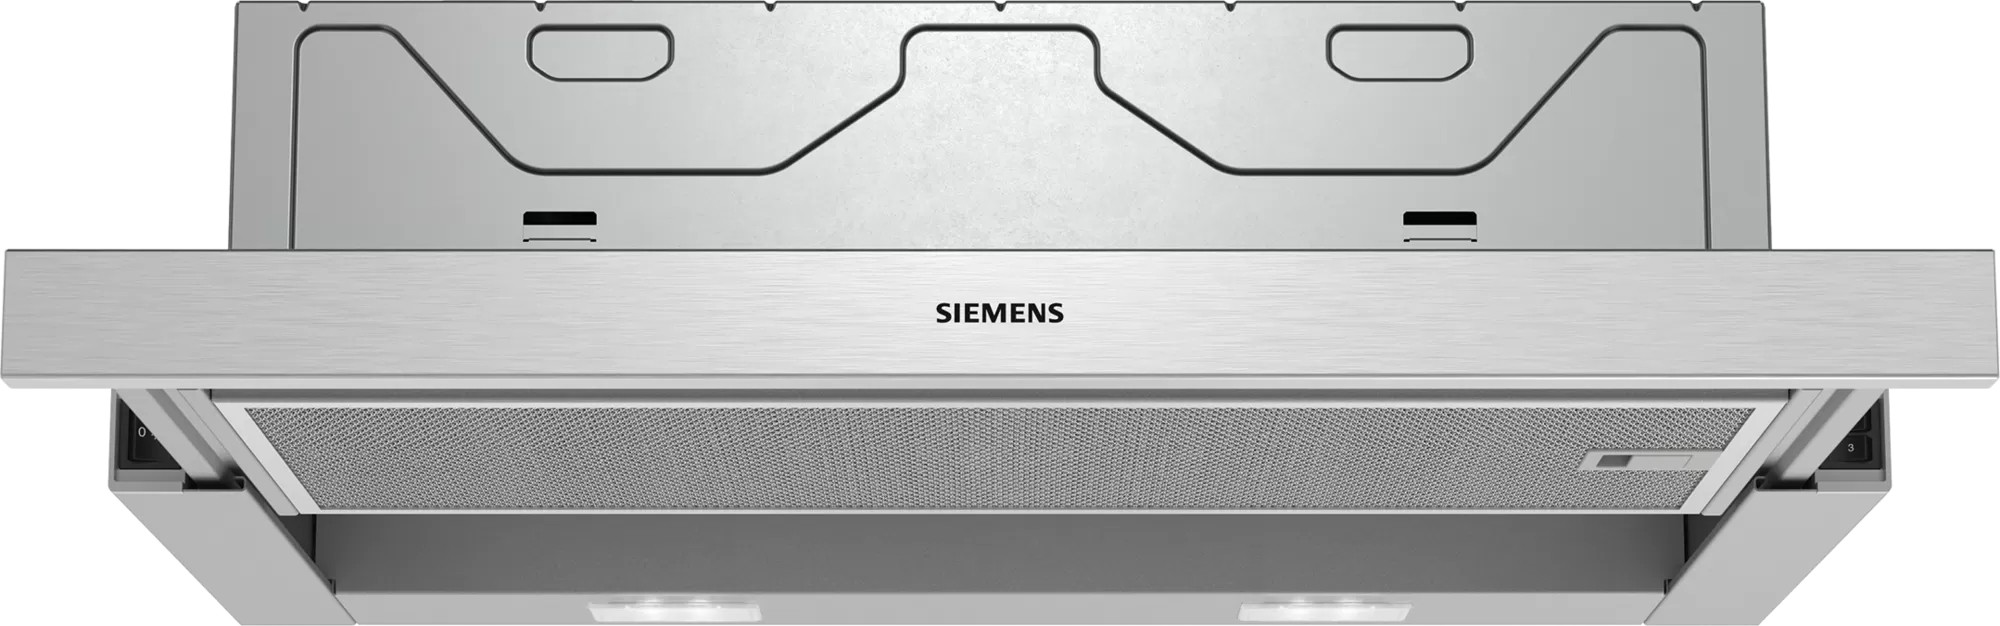 SIEMENS Hotte tiroir  - LI64MB521